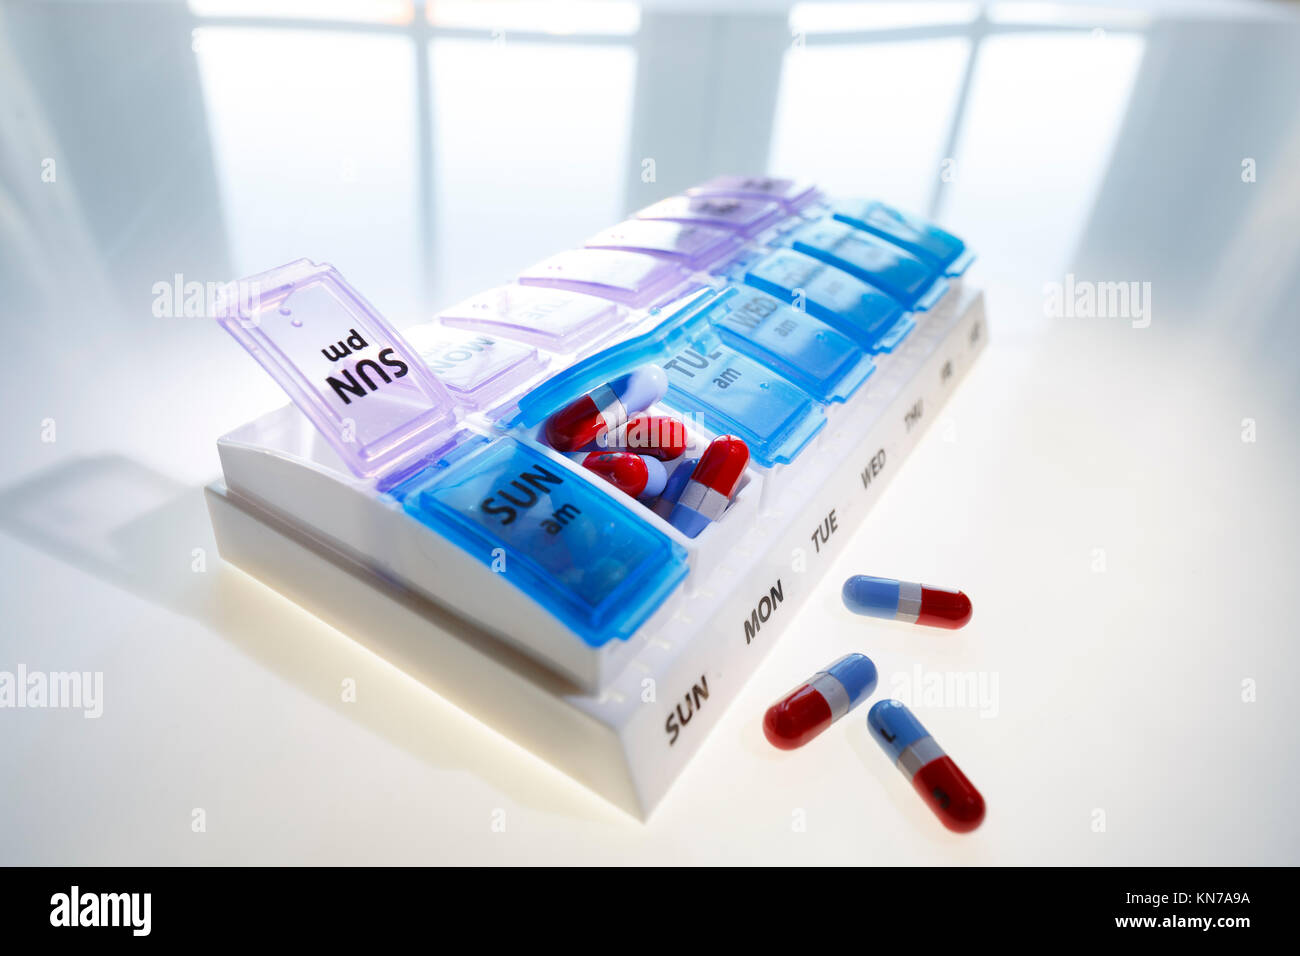 Pill dispenser immagini e fotografie stock ad alta risoluzione - Alamy